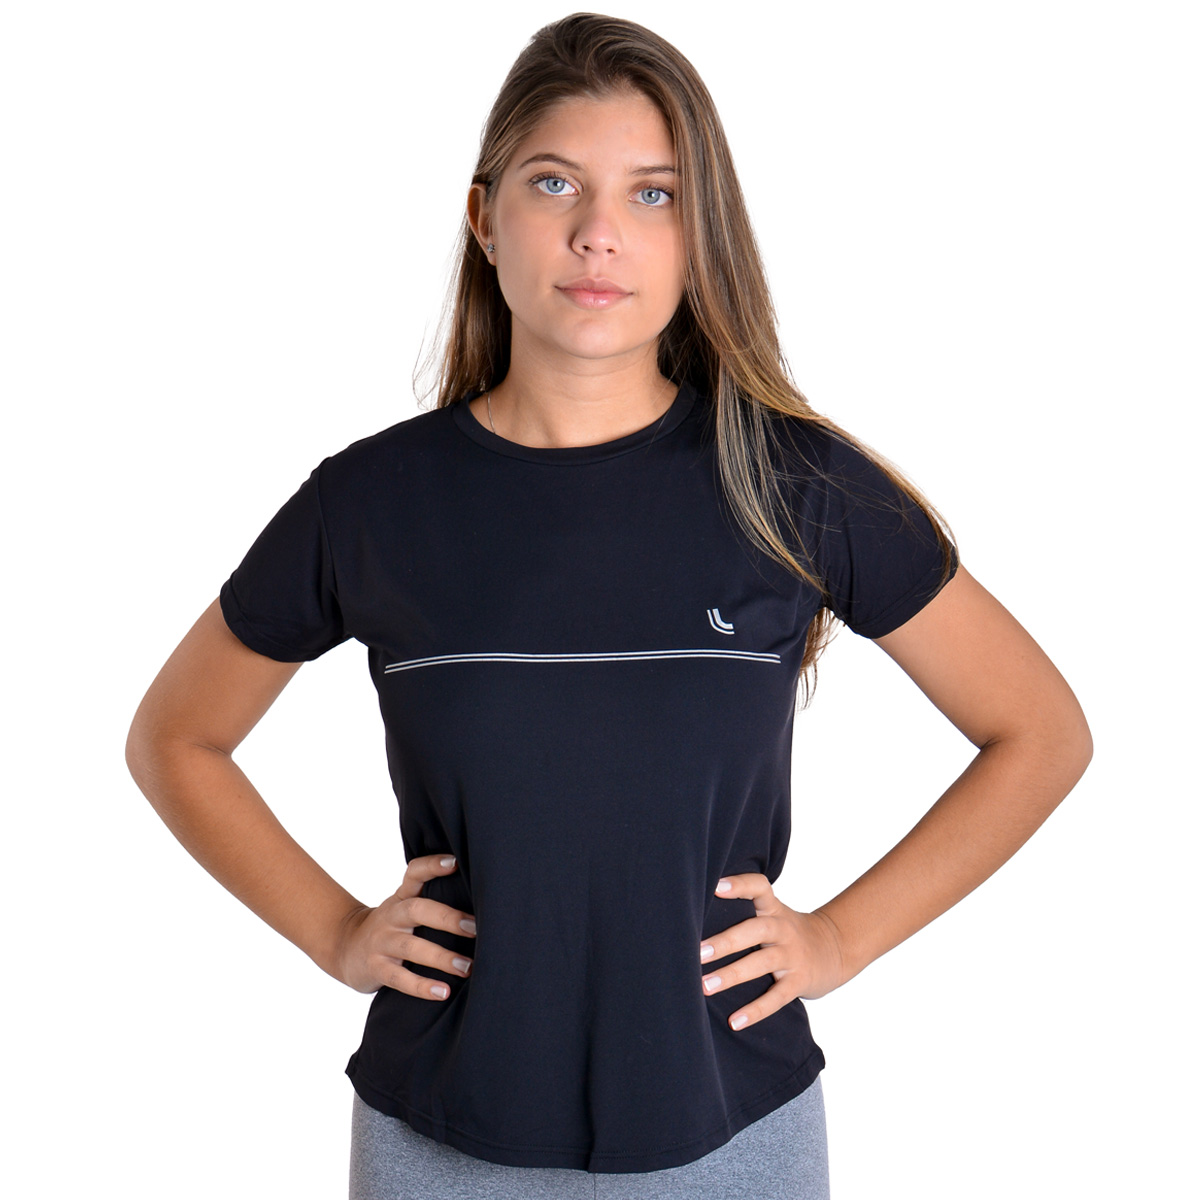 Camiseta para academia e corrida com proteção solar feminina Lupo .